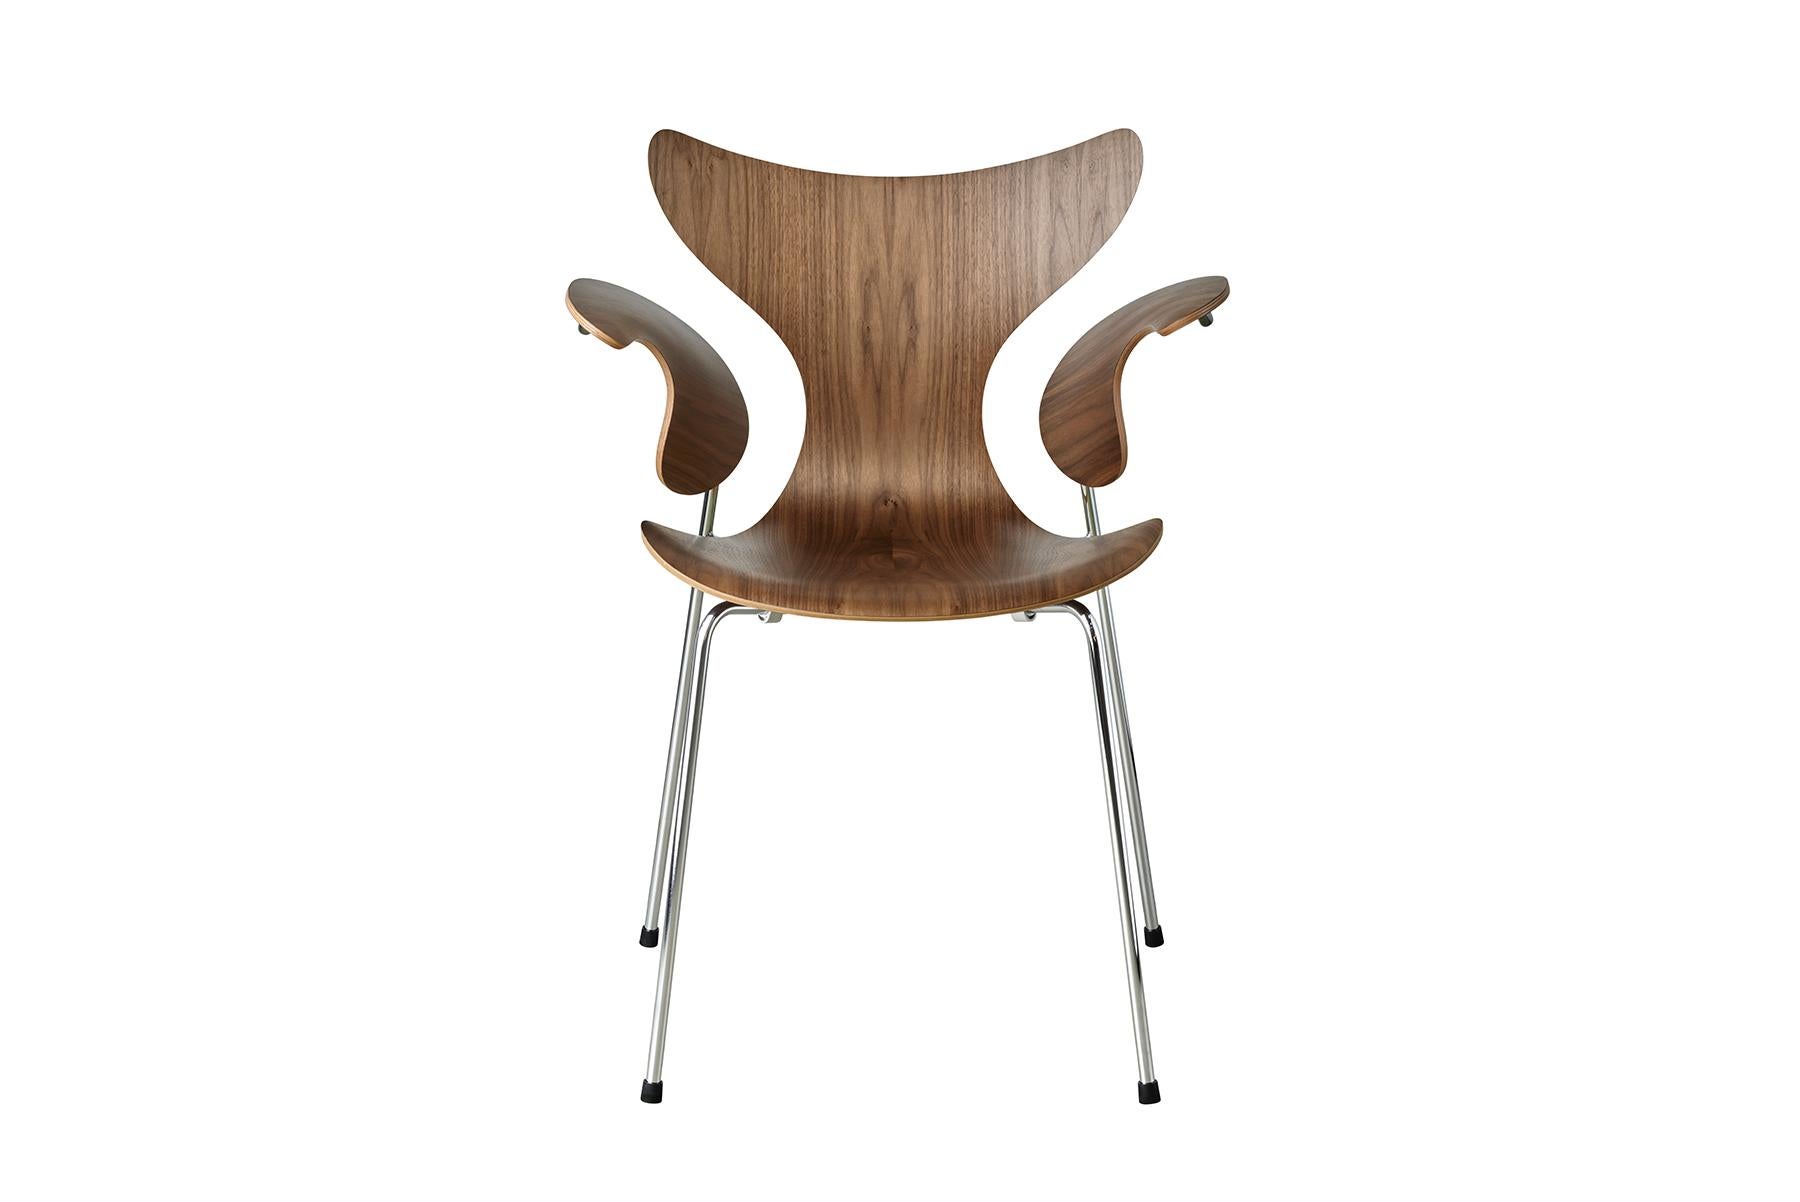 Die Lilie wurde ursprünglich für die Dänische Nationalbank entworfen. Das erste Modell war 3108 aus dem Jahr 1968, und auf der dänischen Möbelmesse 1970 wurde der Stuhl mit Armlehnen, Modell 3208, auf den Markt gebracht. Der Stuhl besteht aus